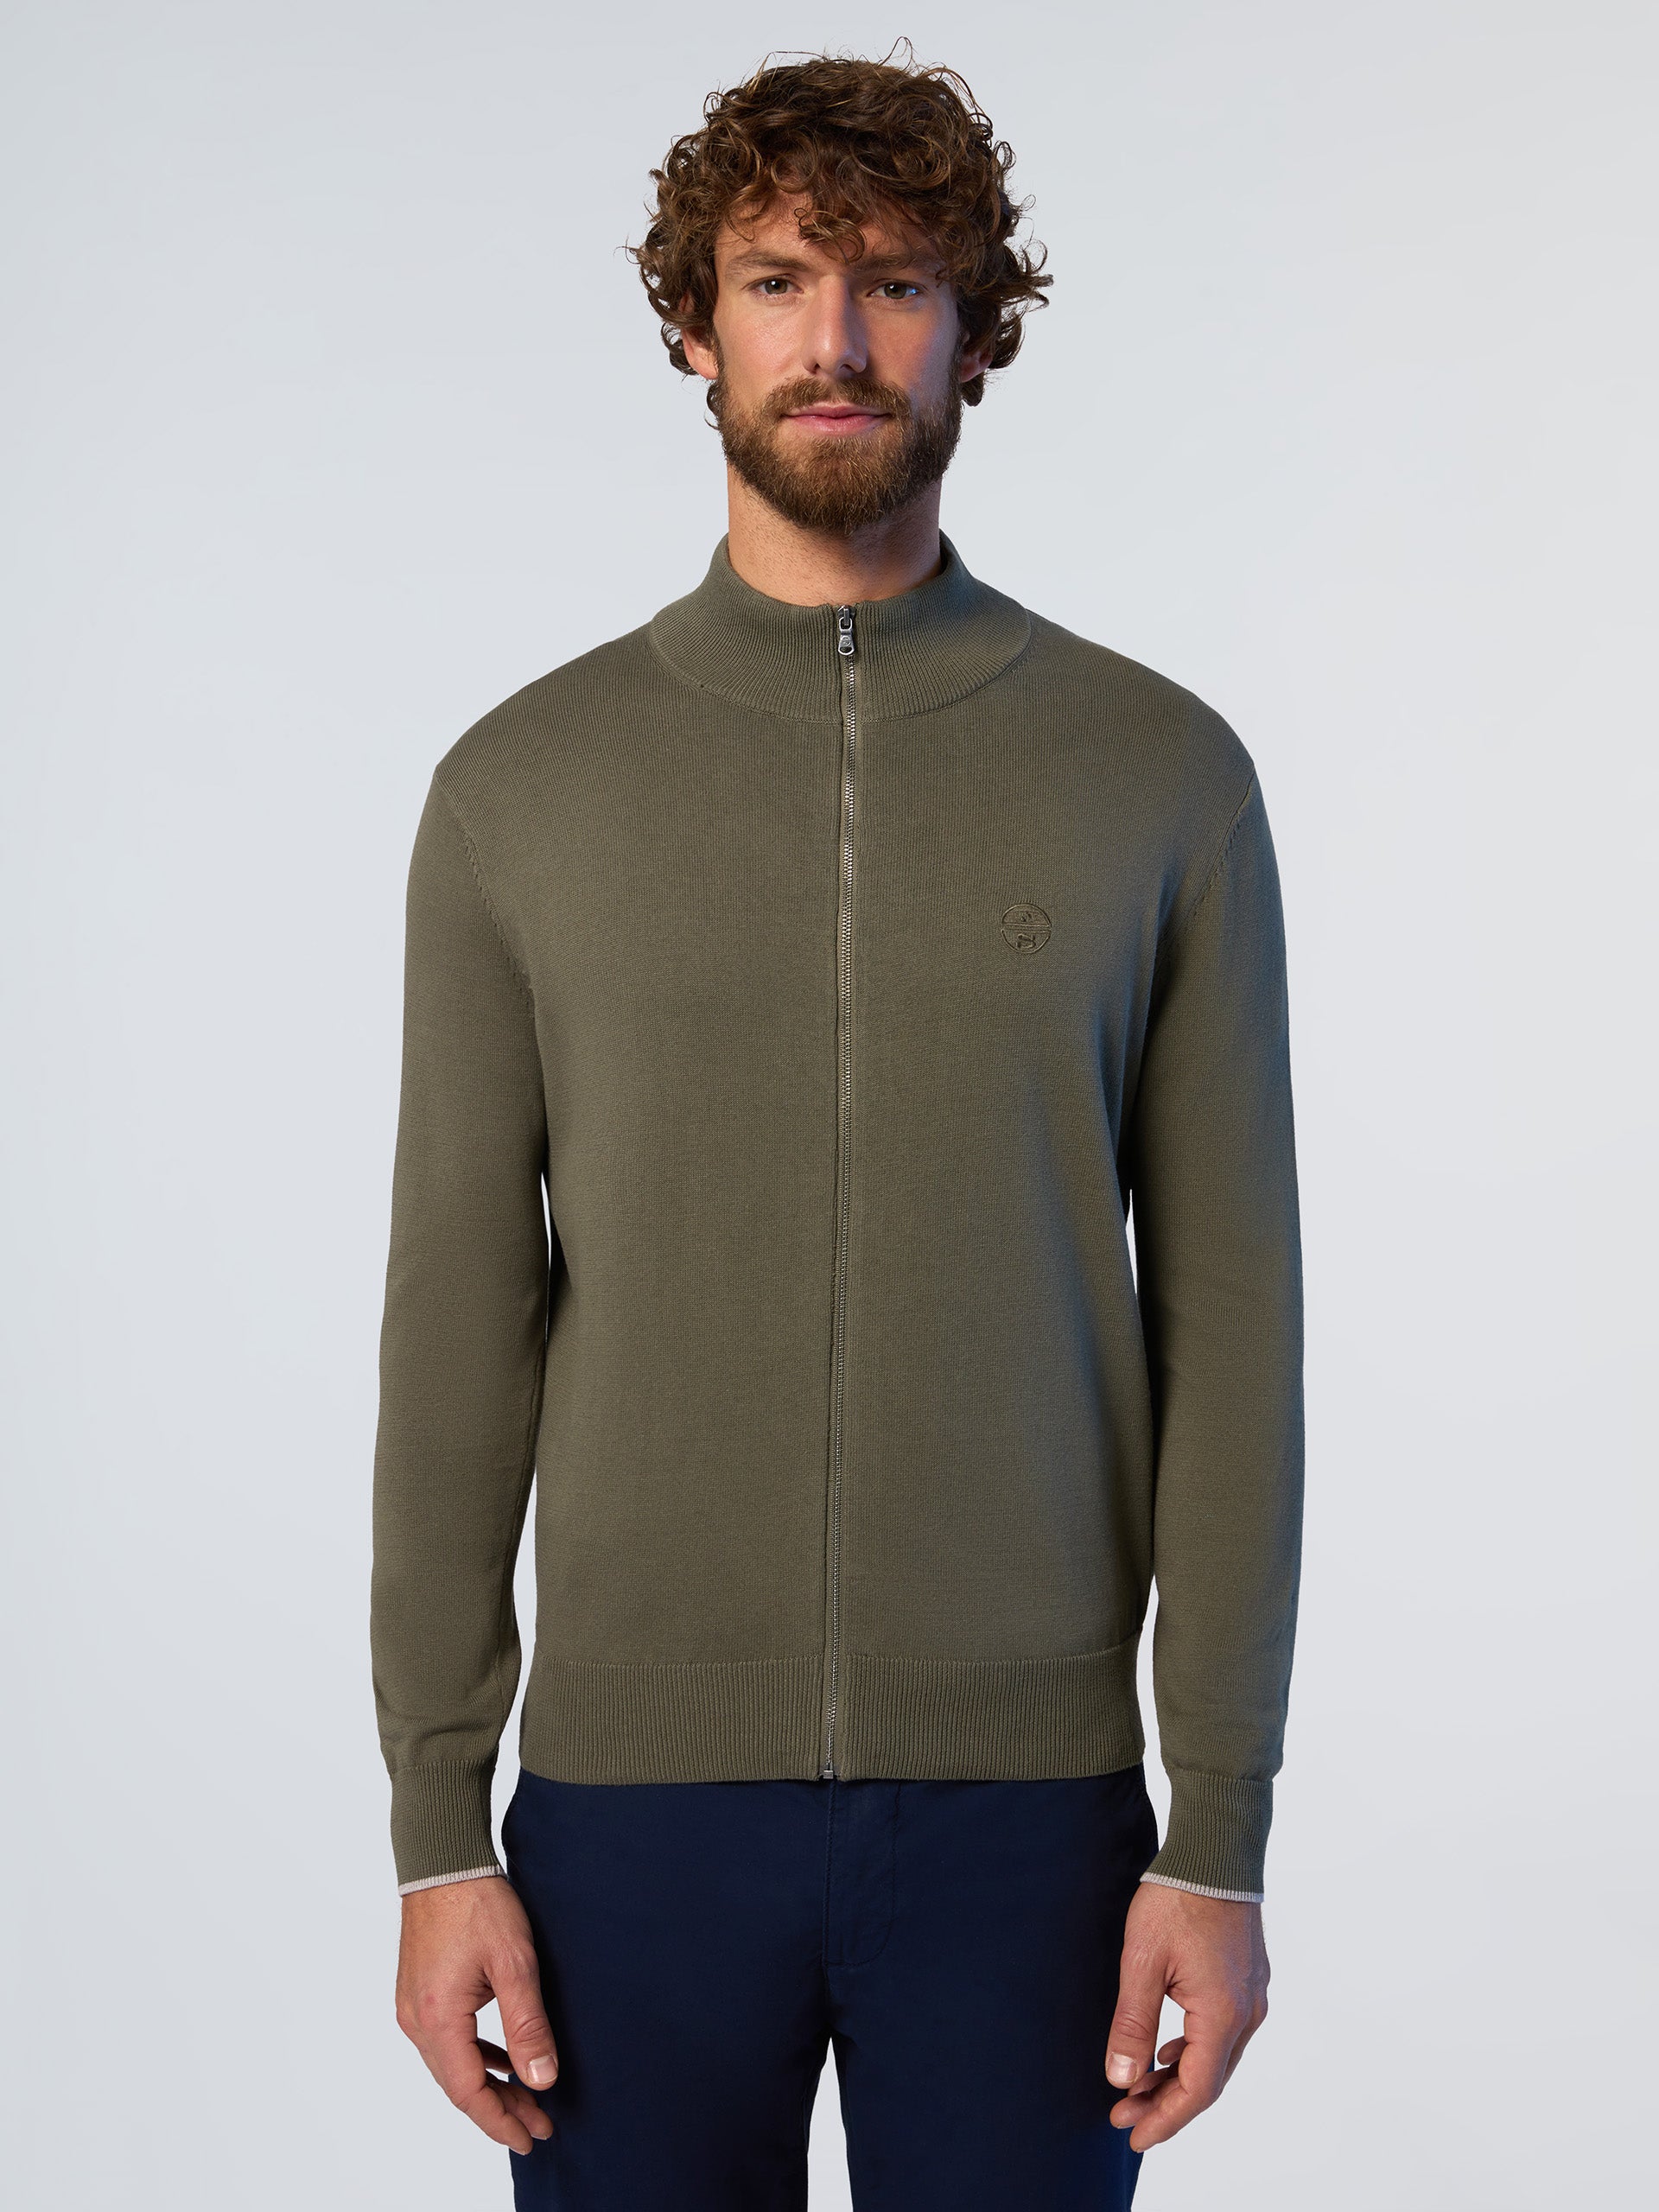 High-neck zipper sweater